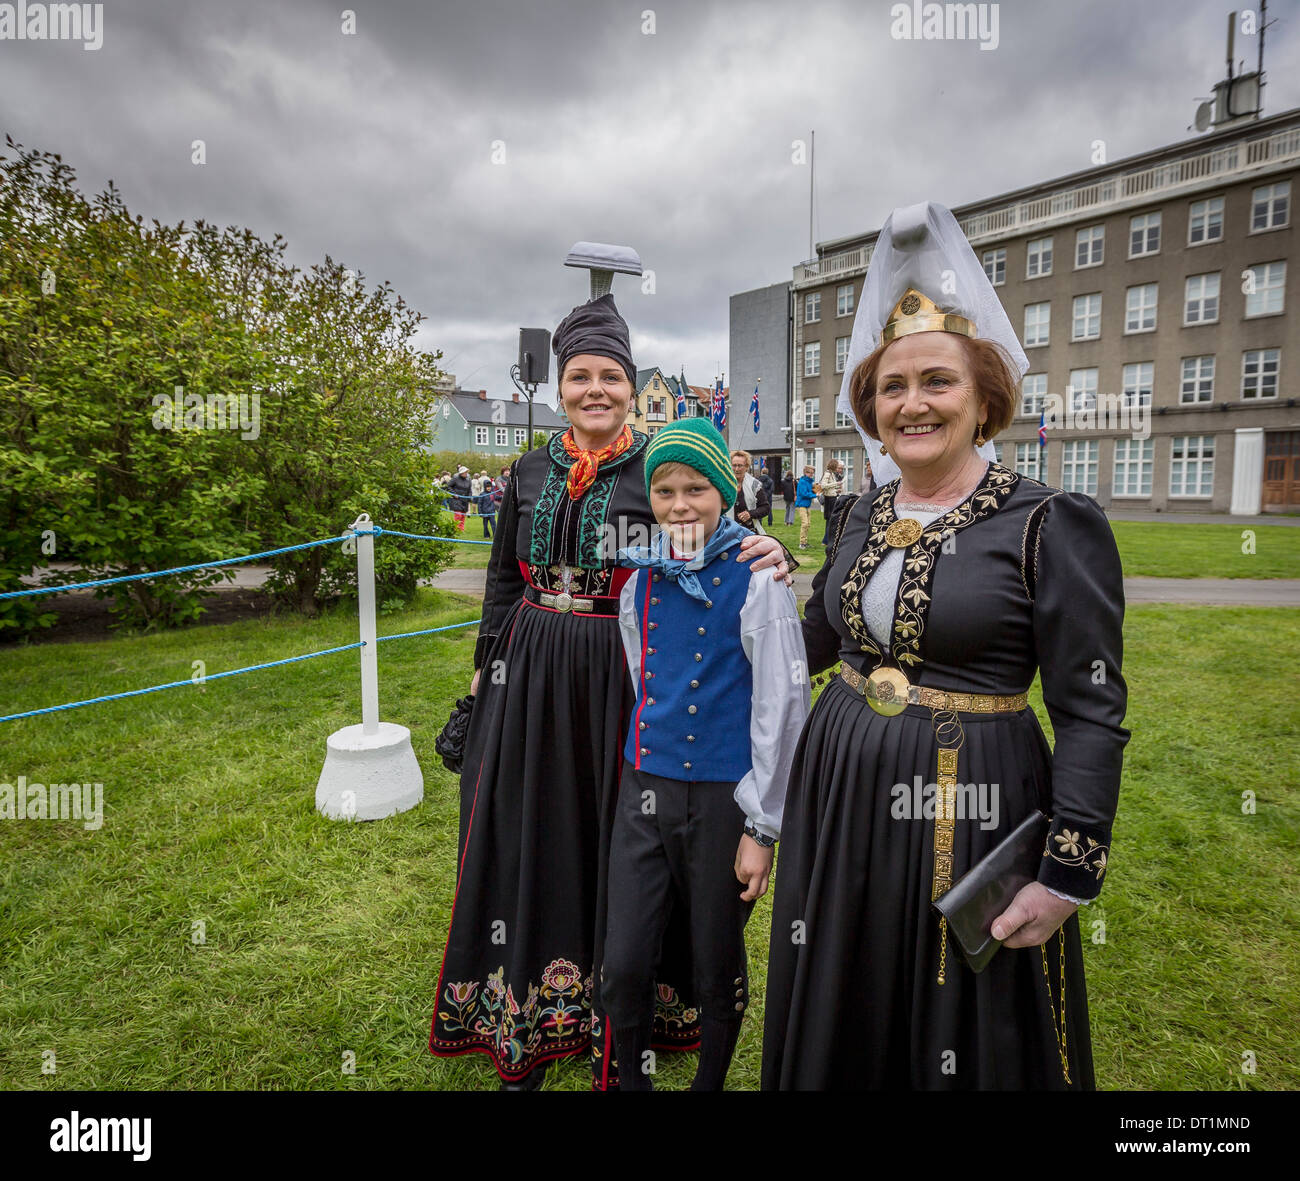 Gekleidet in traditionellen isländischen Kostümen am 17. Juni Islands Unabhängigkeitstag Reykjavik, Island Stockfoto